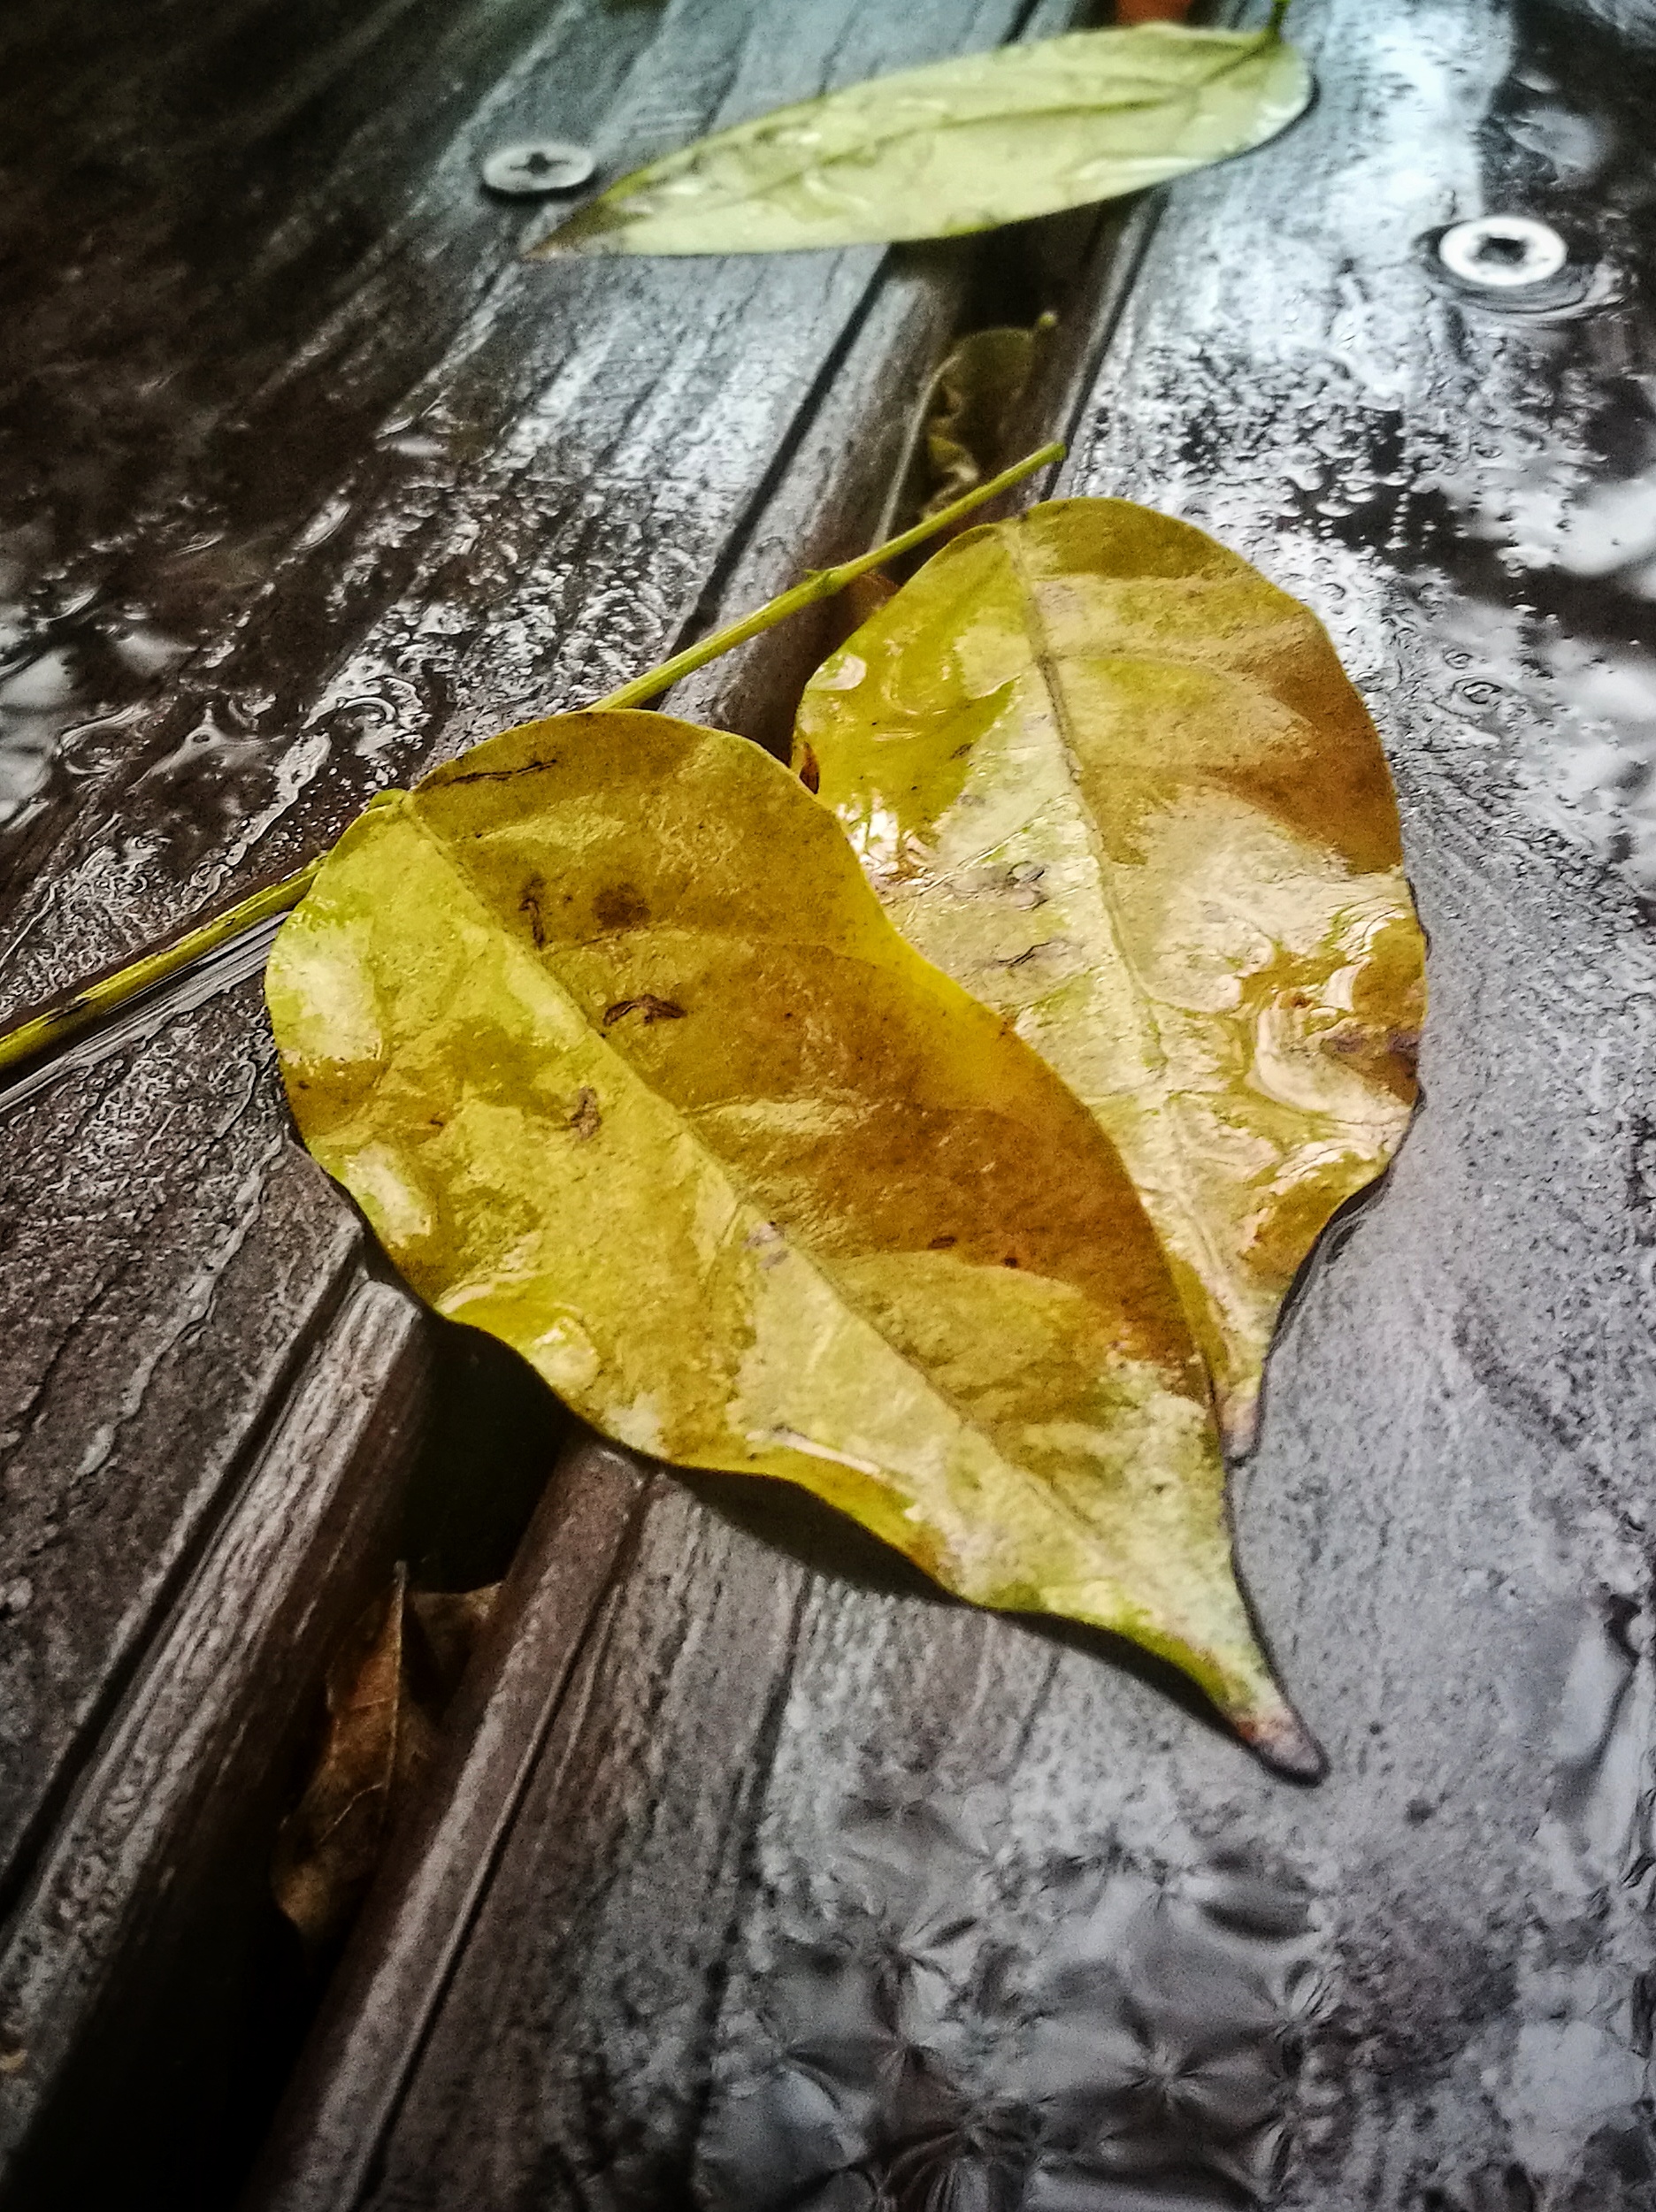 伤感秋雨落叶凄凉图片图片